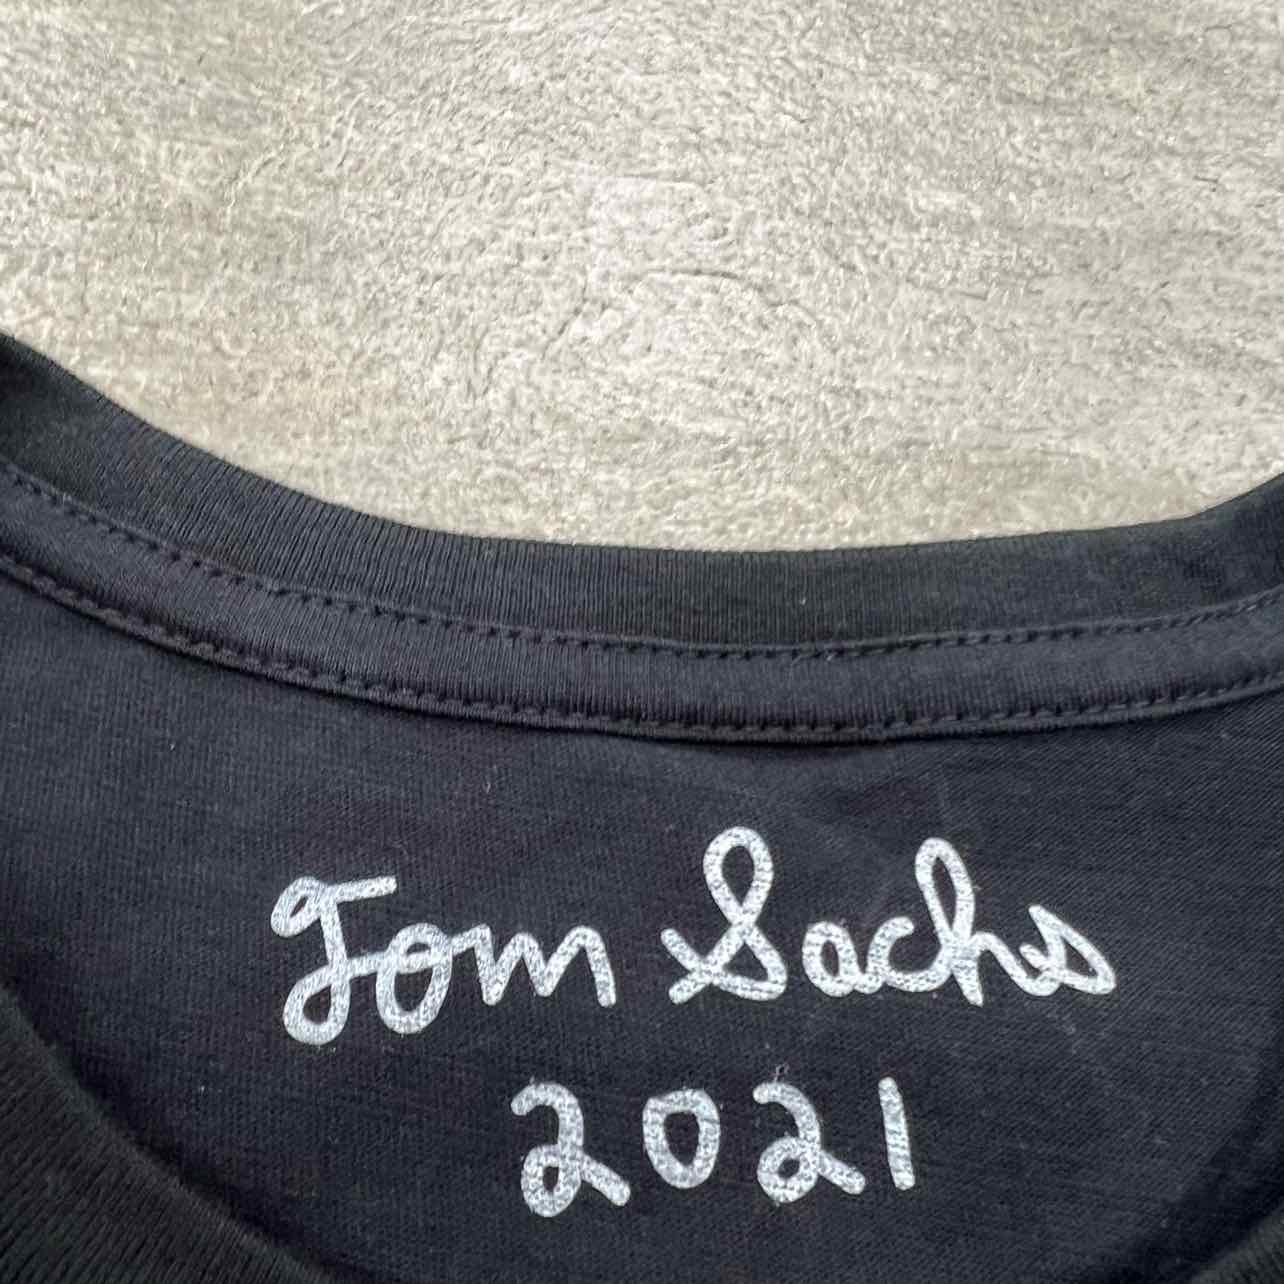 Tom Sachs T-Shirt &quot;SSENSE&quot; Black New Size L